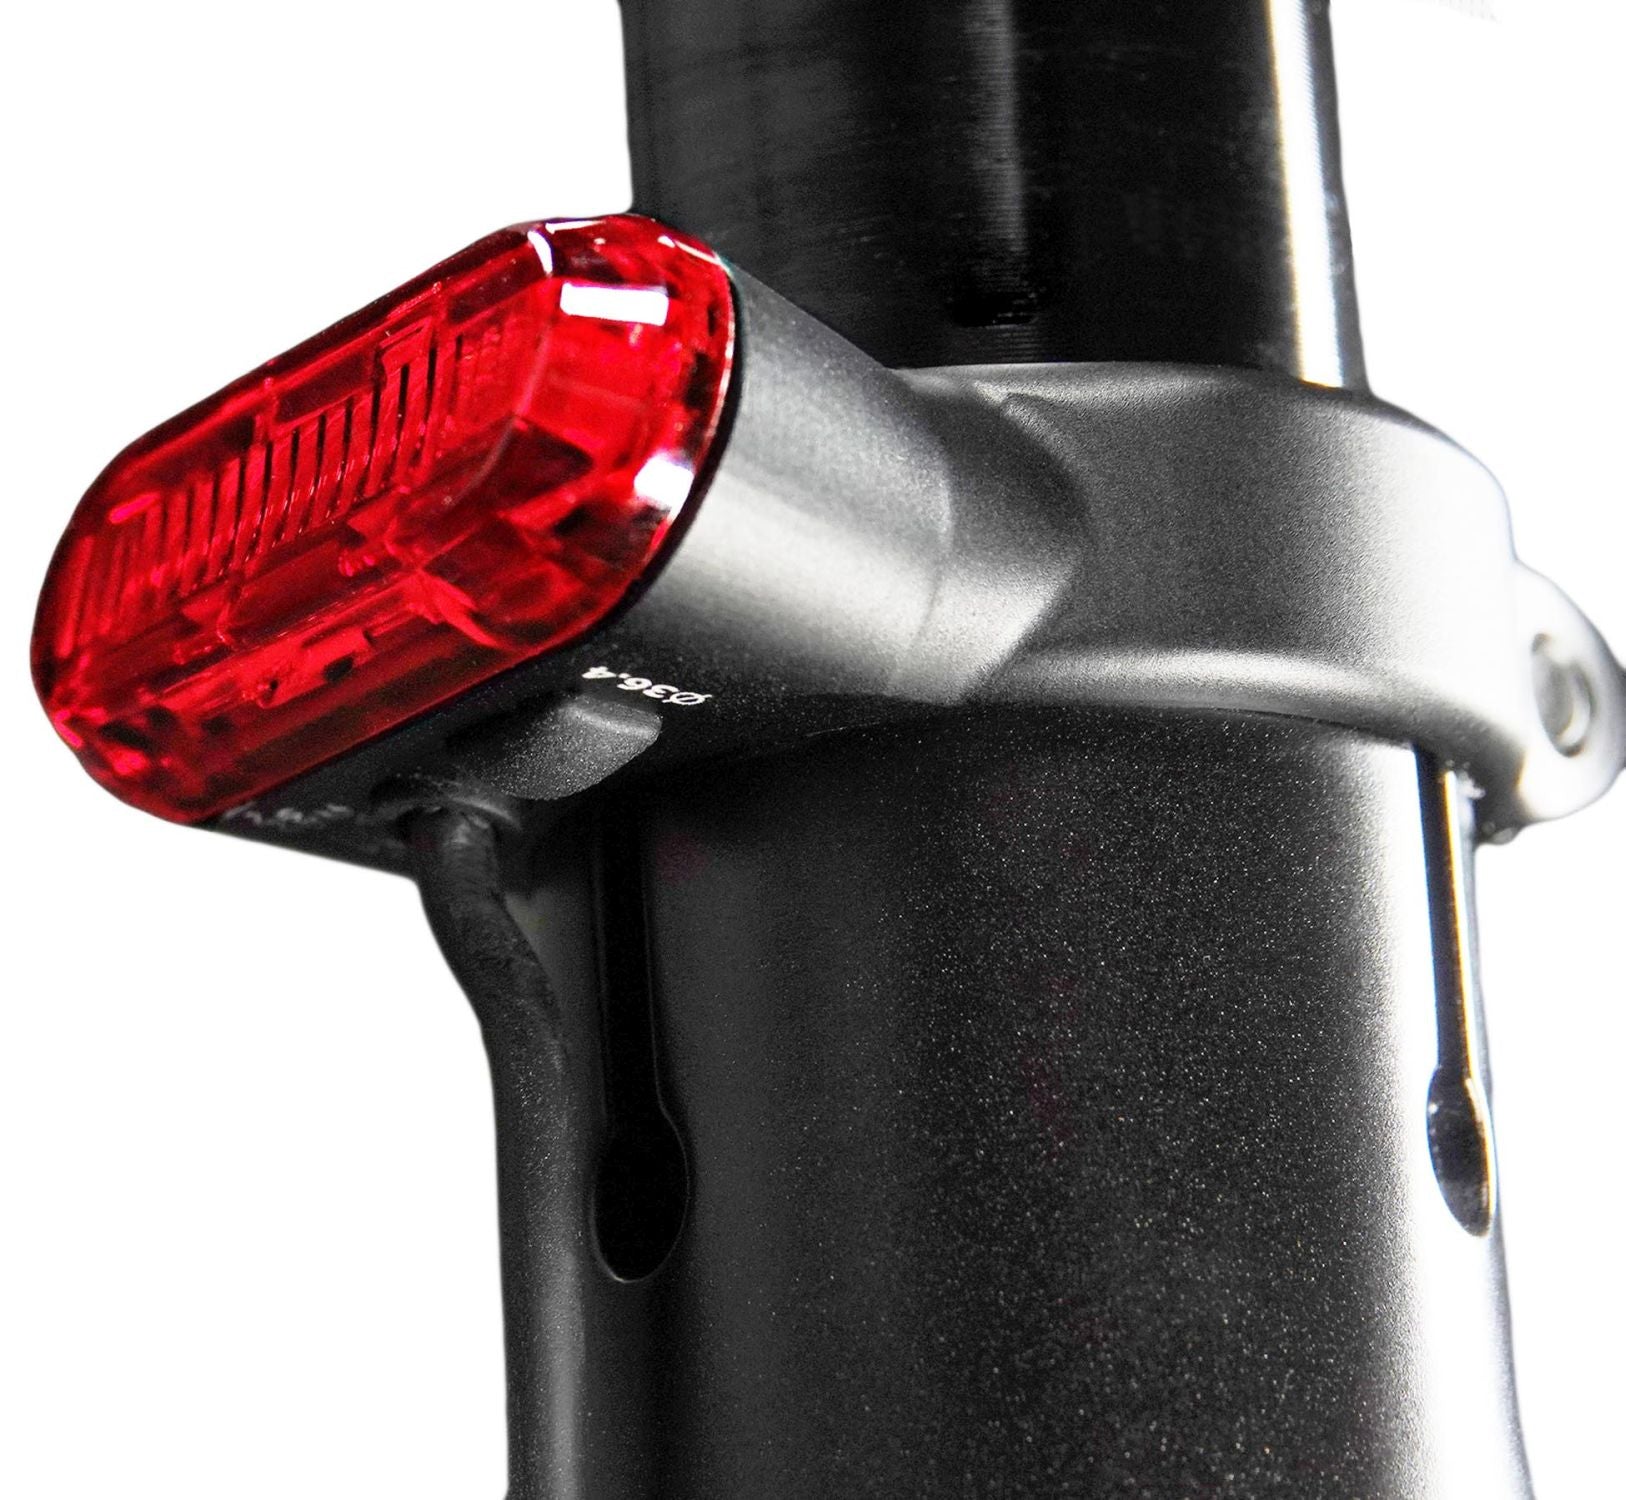 Lupine Rotlicht StVZO C14 34,9mm - Liquid-Life #Wähle Deine Farbe_schwarz